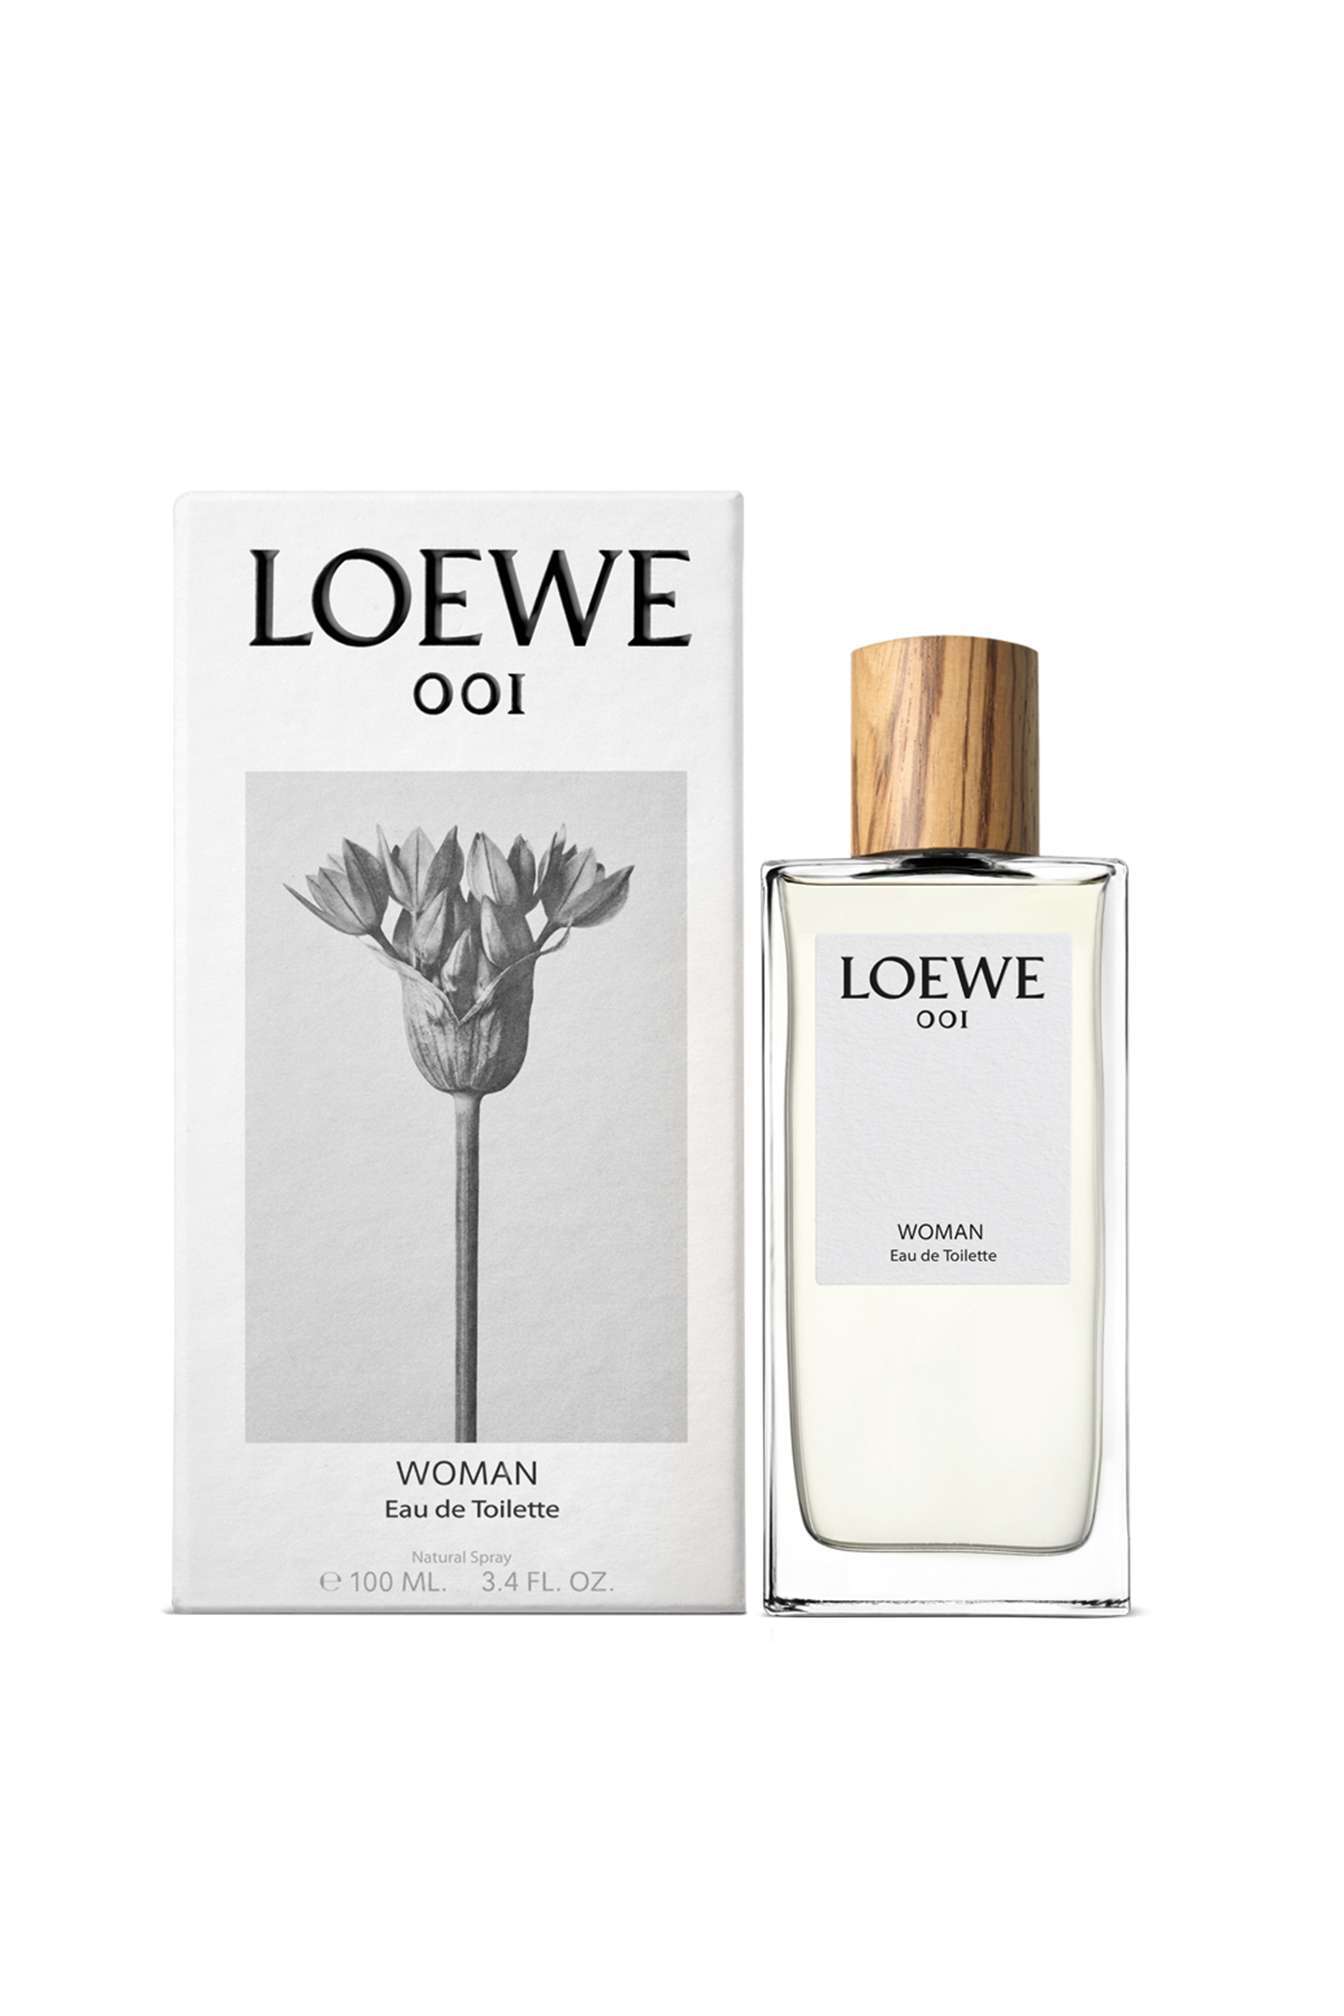 Loewe 001 Woman, edt 50ml